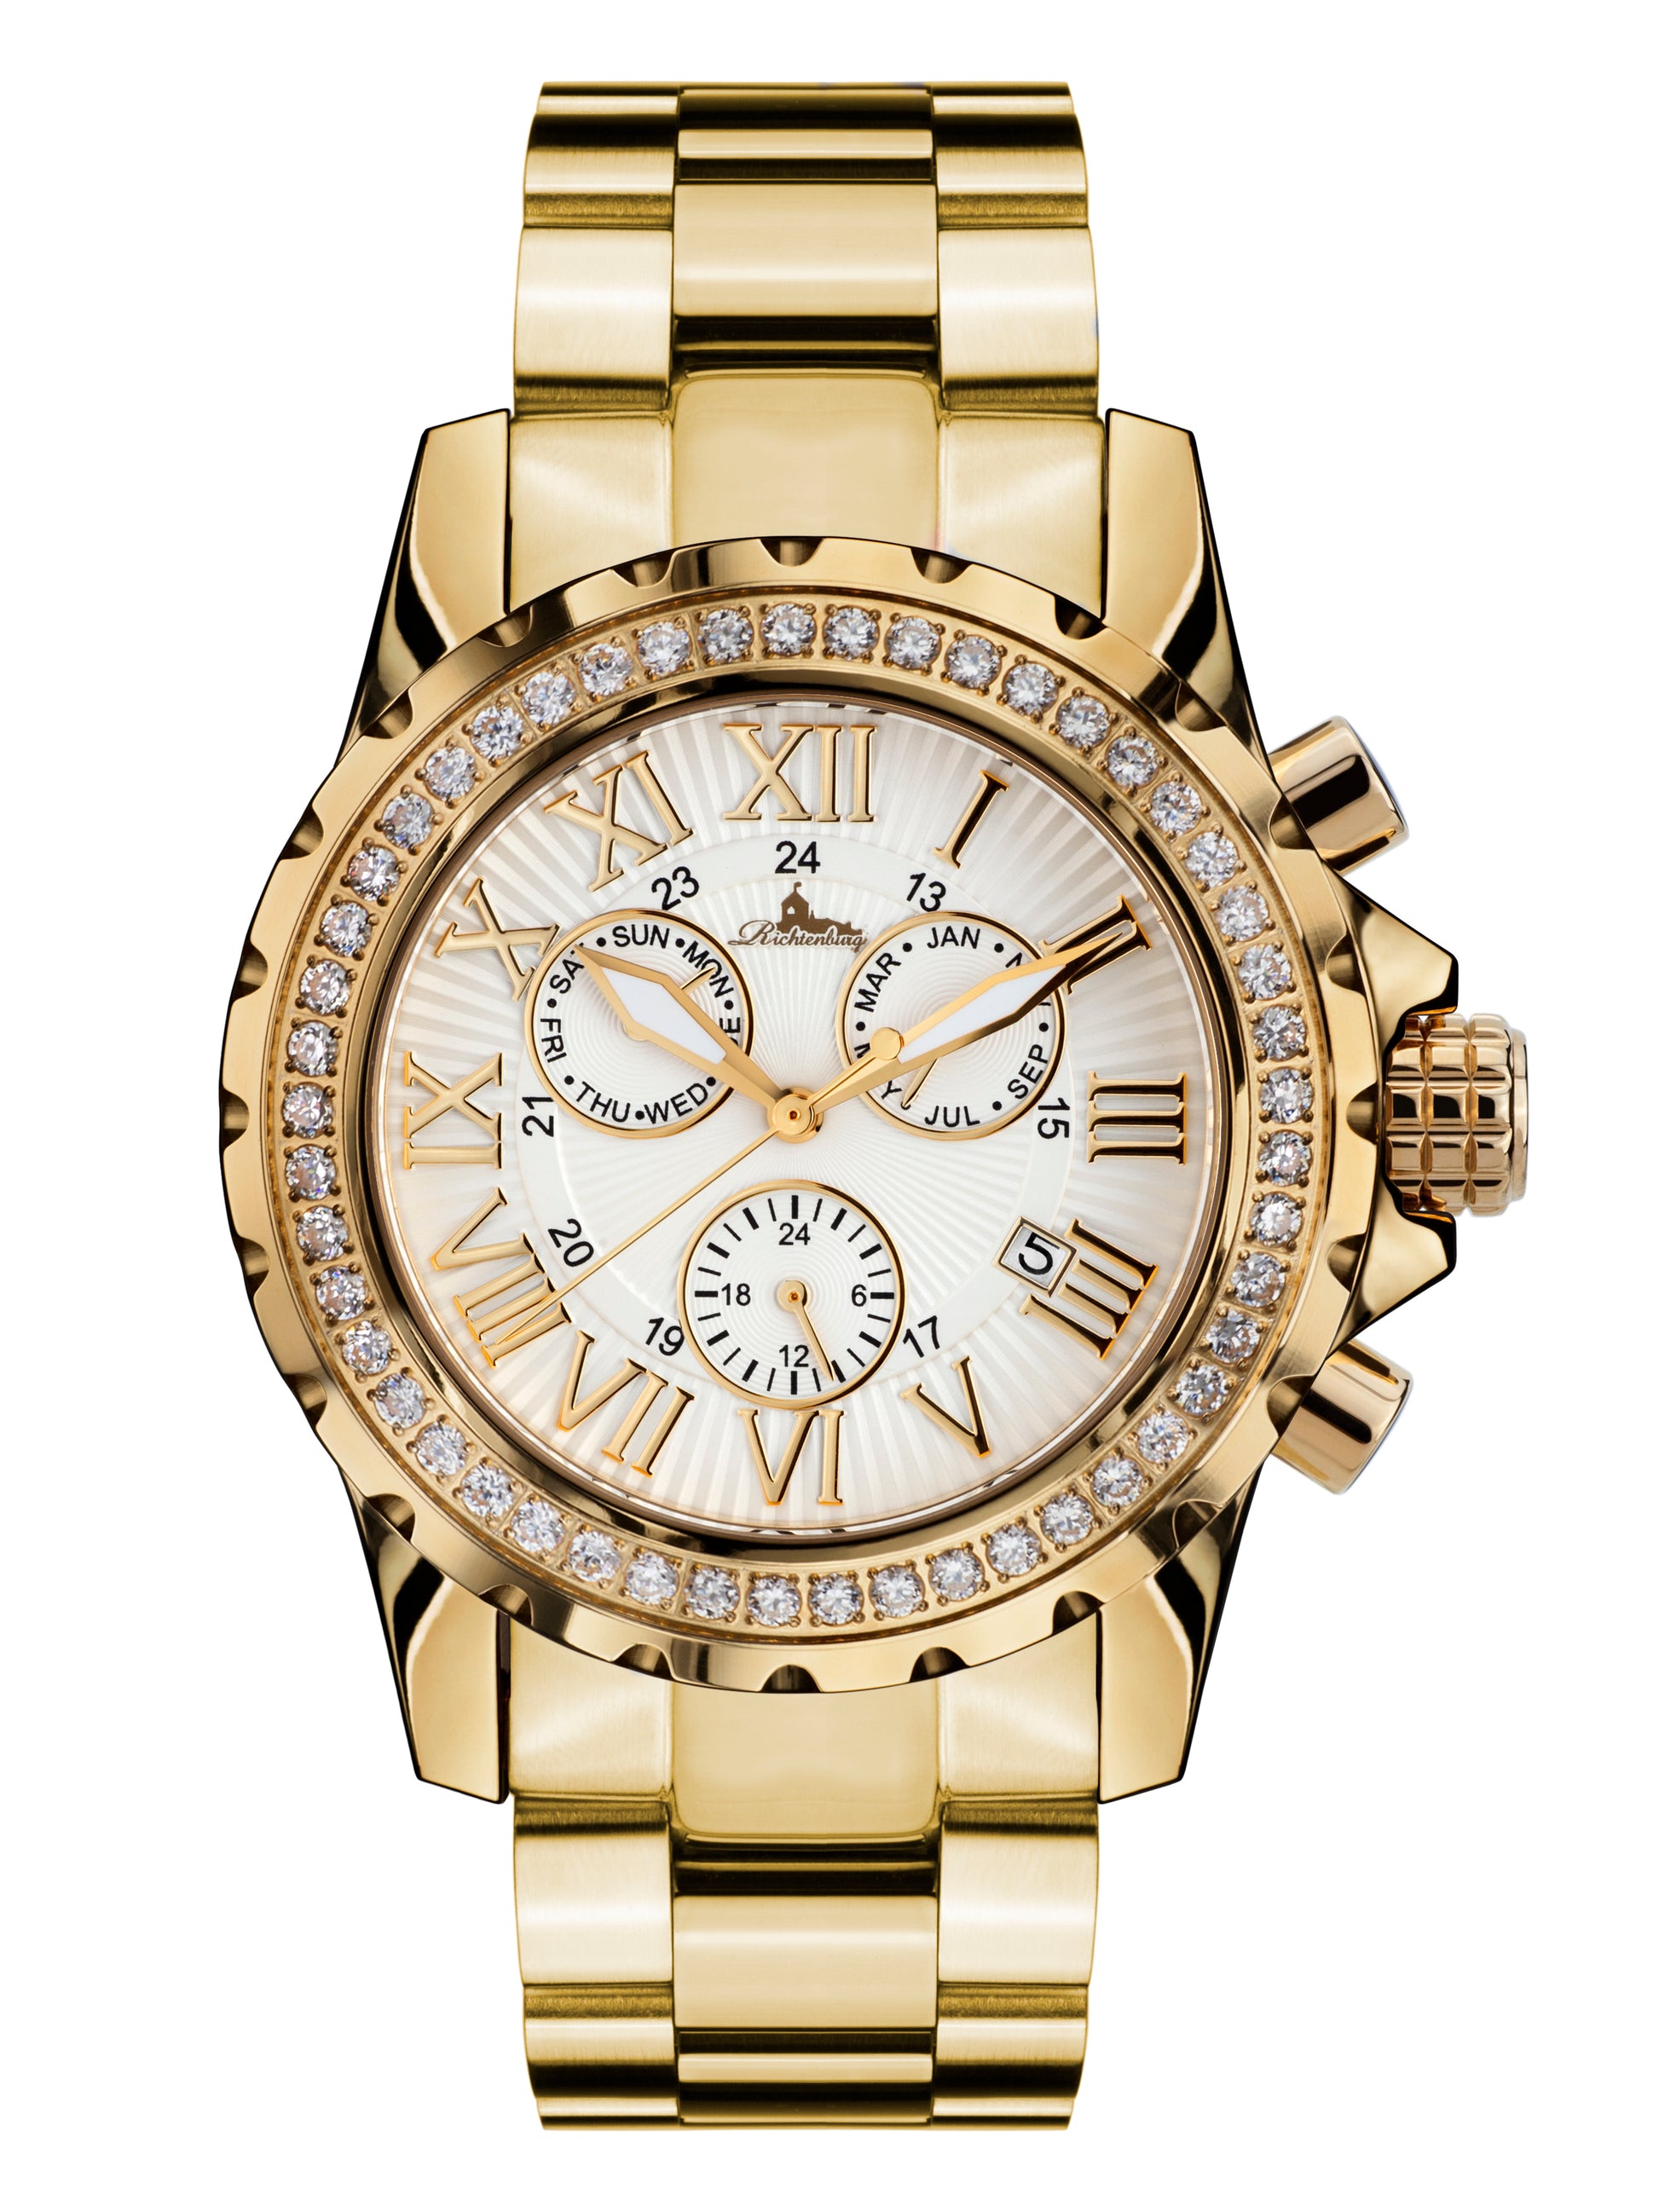 Automatic watches — Romantica — Richtenburg — gold IP silver steel